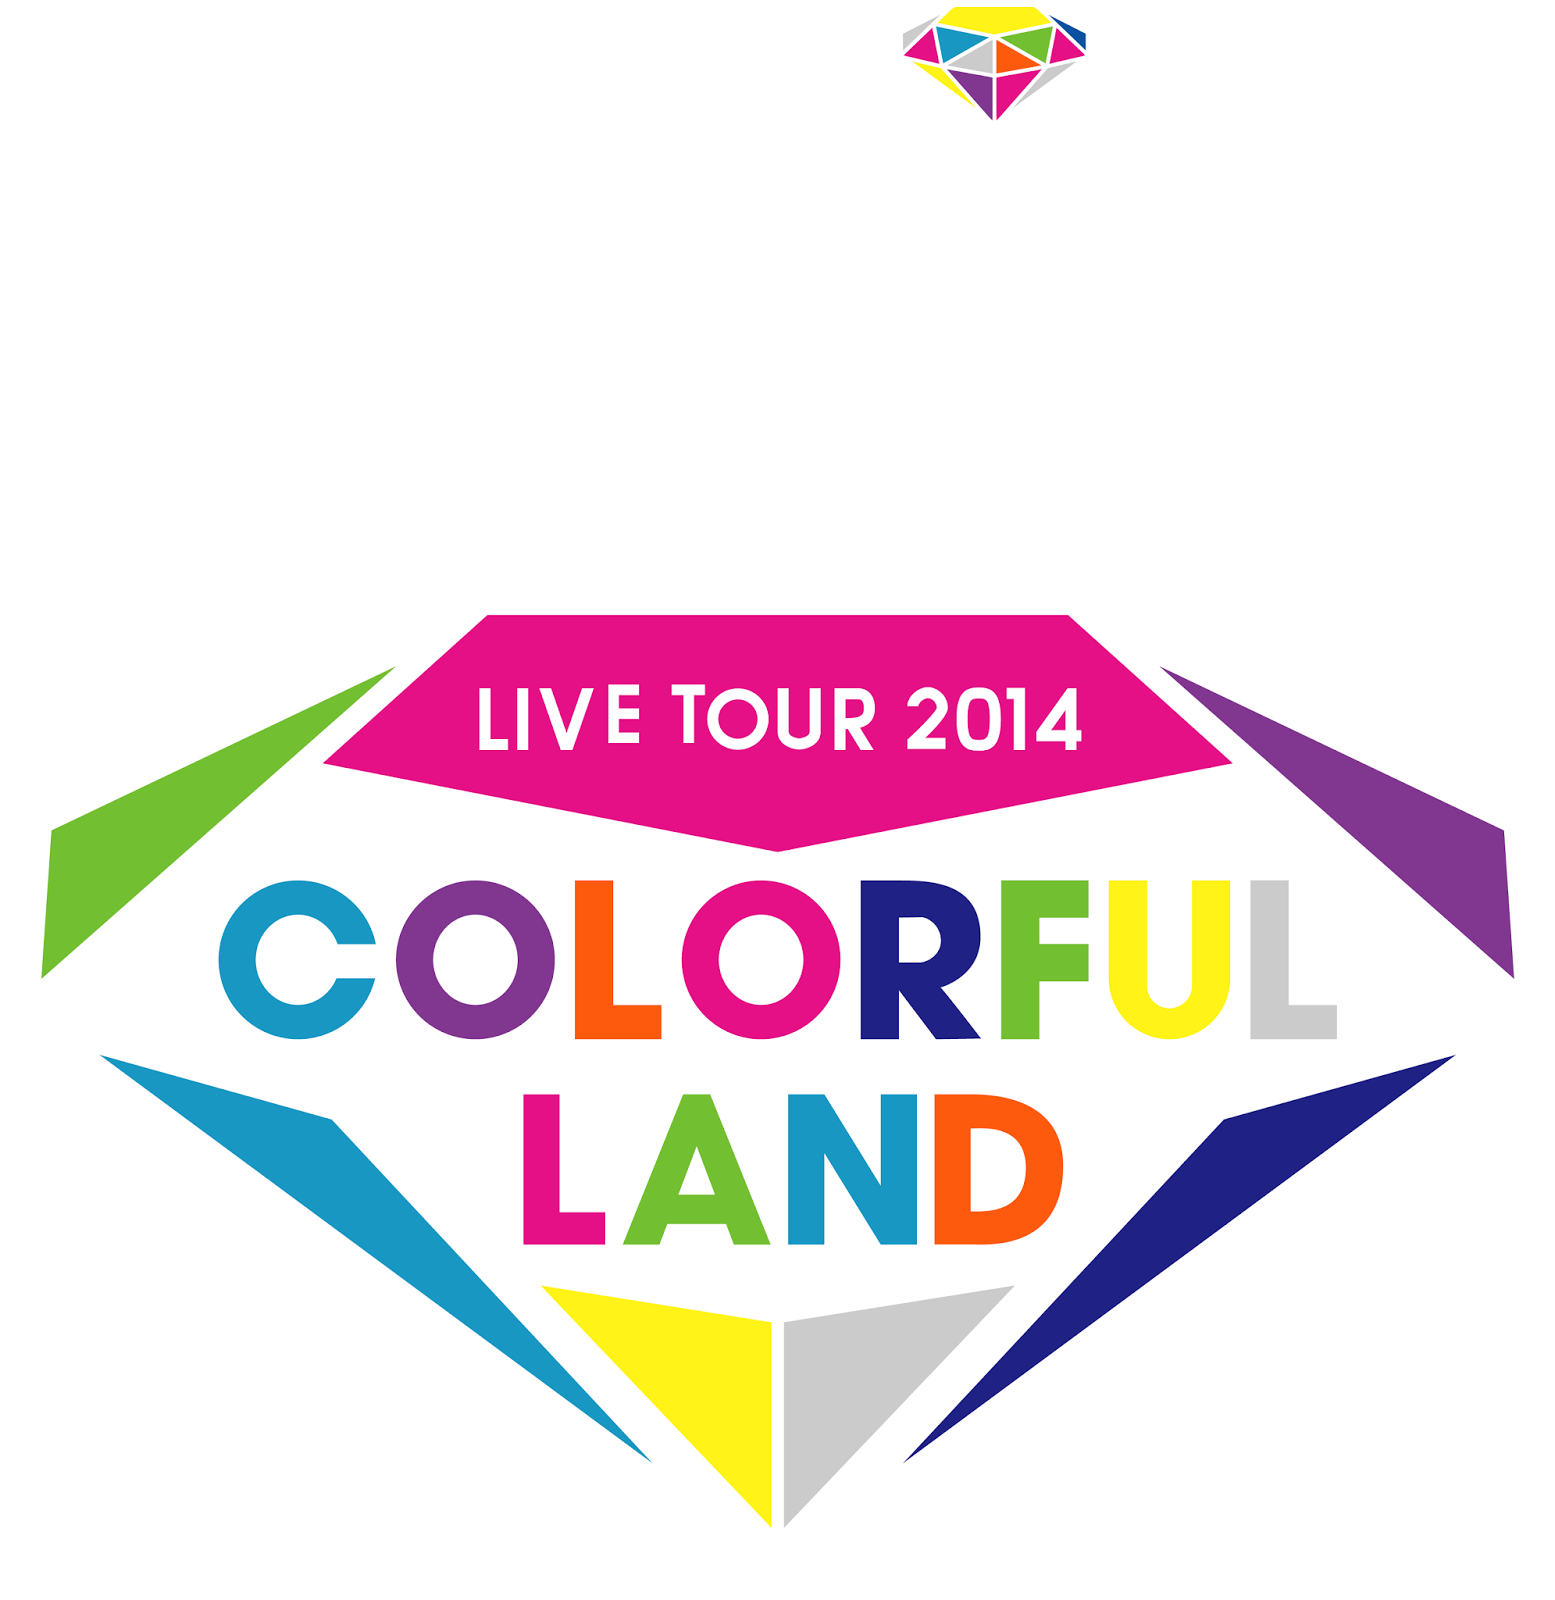 Logodol 全てが高画質 背景透過なアーティストのロゴをお届けするブログ E Girls Live Tour 14 Colorful Land のロゴ